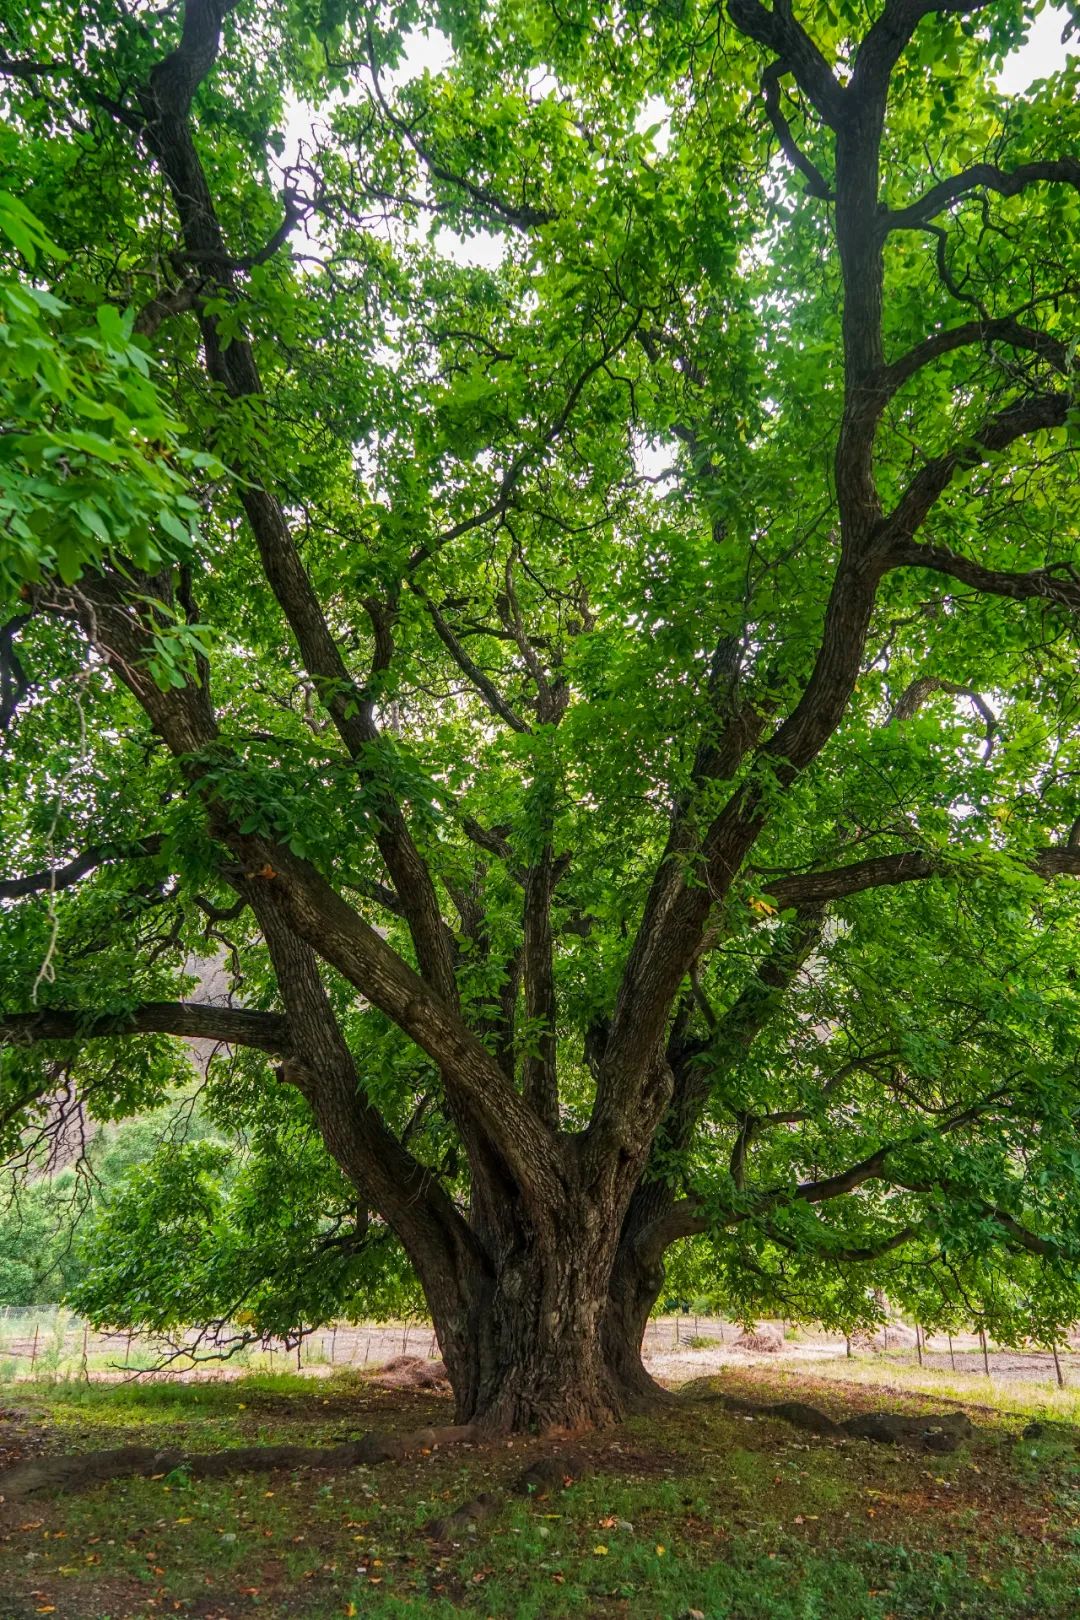 林芝有棵柏树王,距今已有3200多年树龄,被誉为中国柏树之最